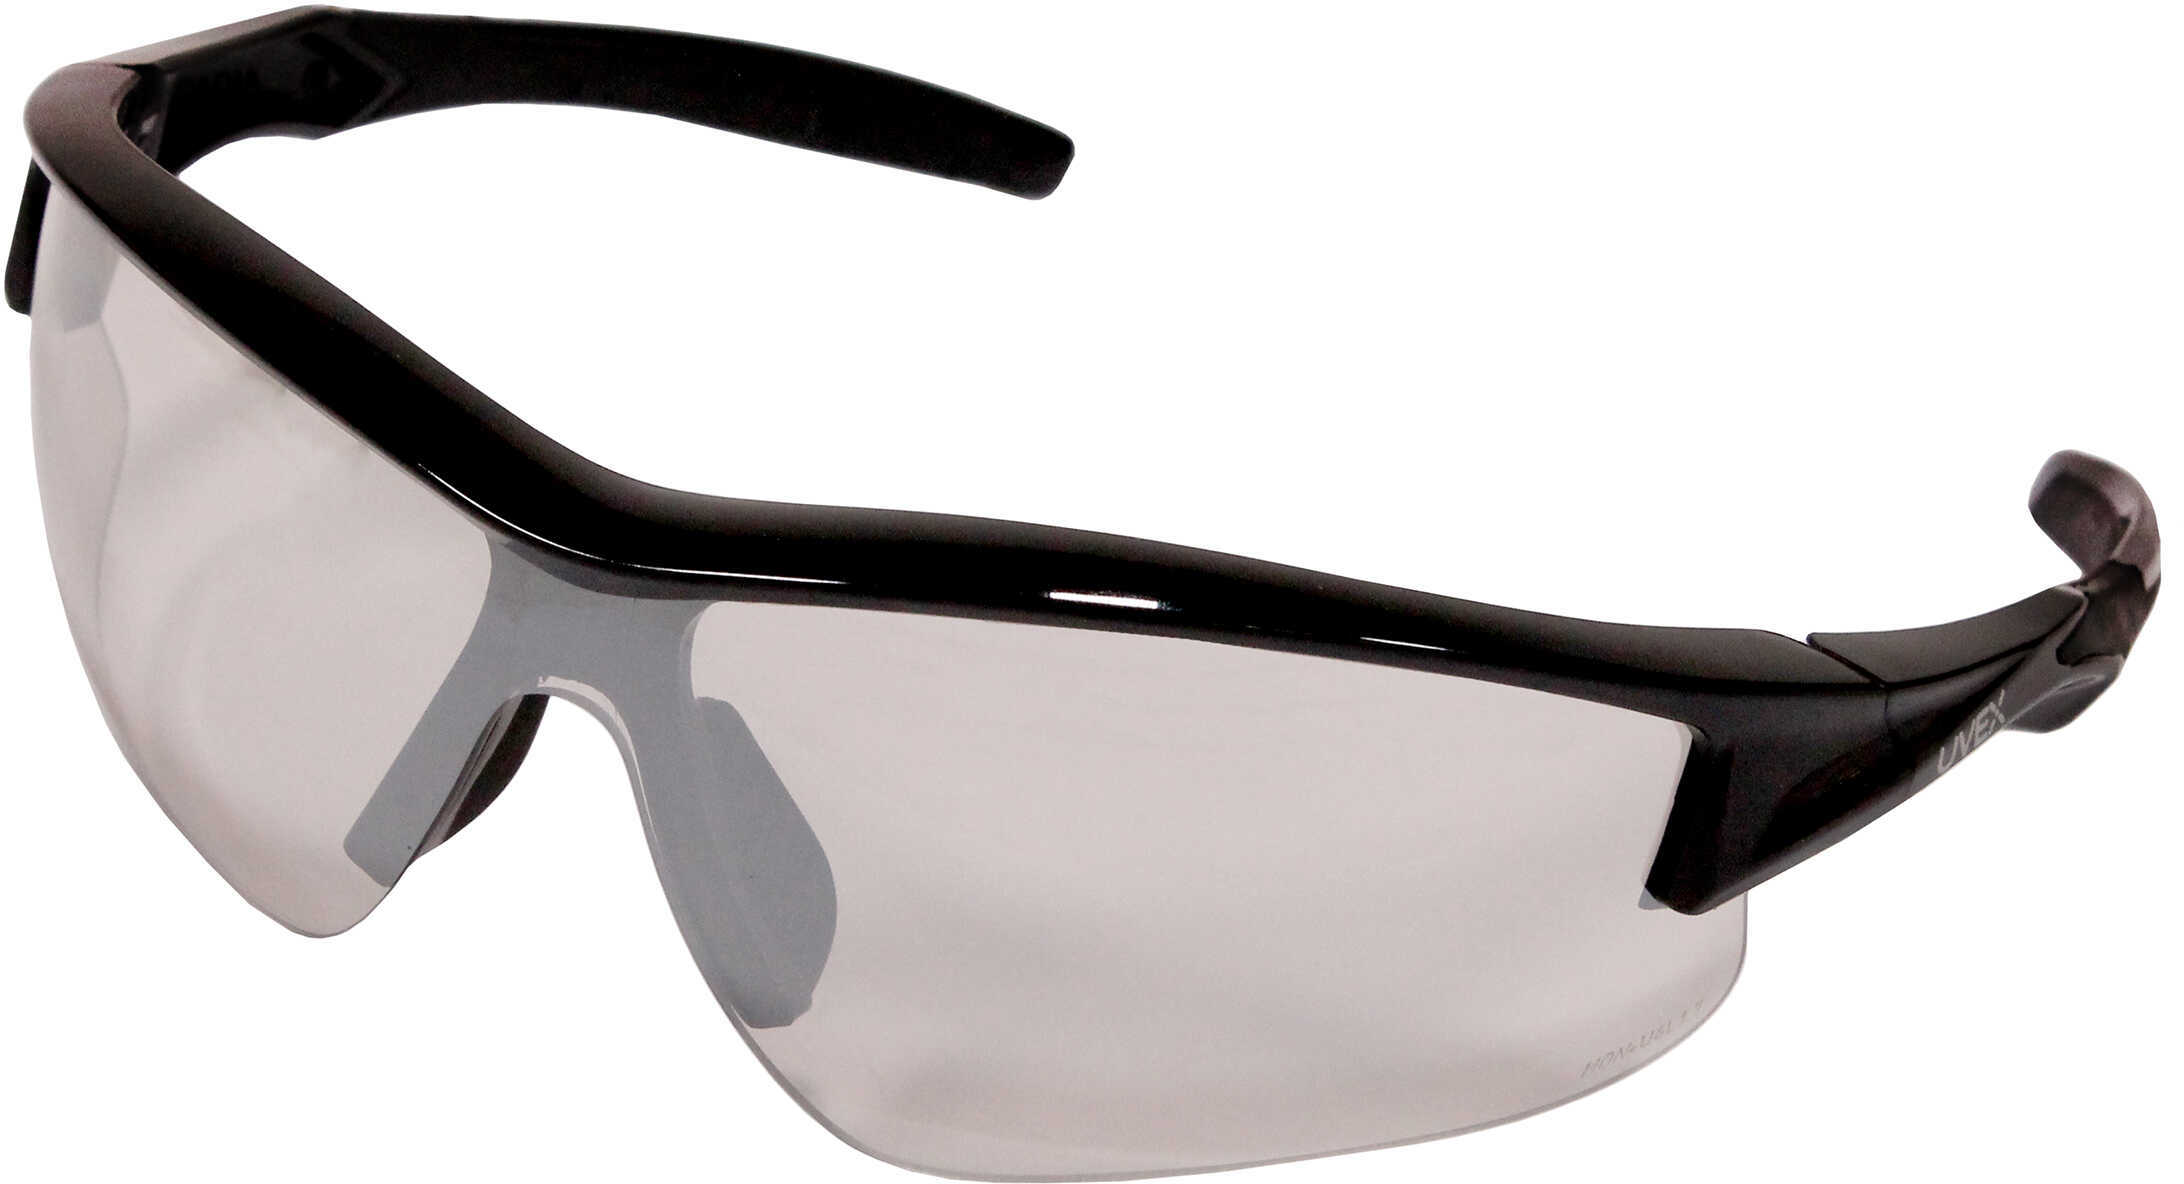 Howard LEIGHT Acadia Glasses Black Frame/SCT-Reflect 50 Len